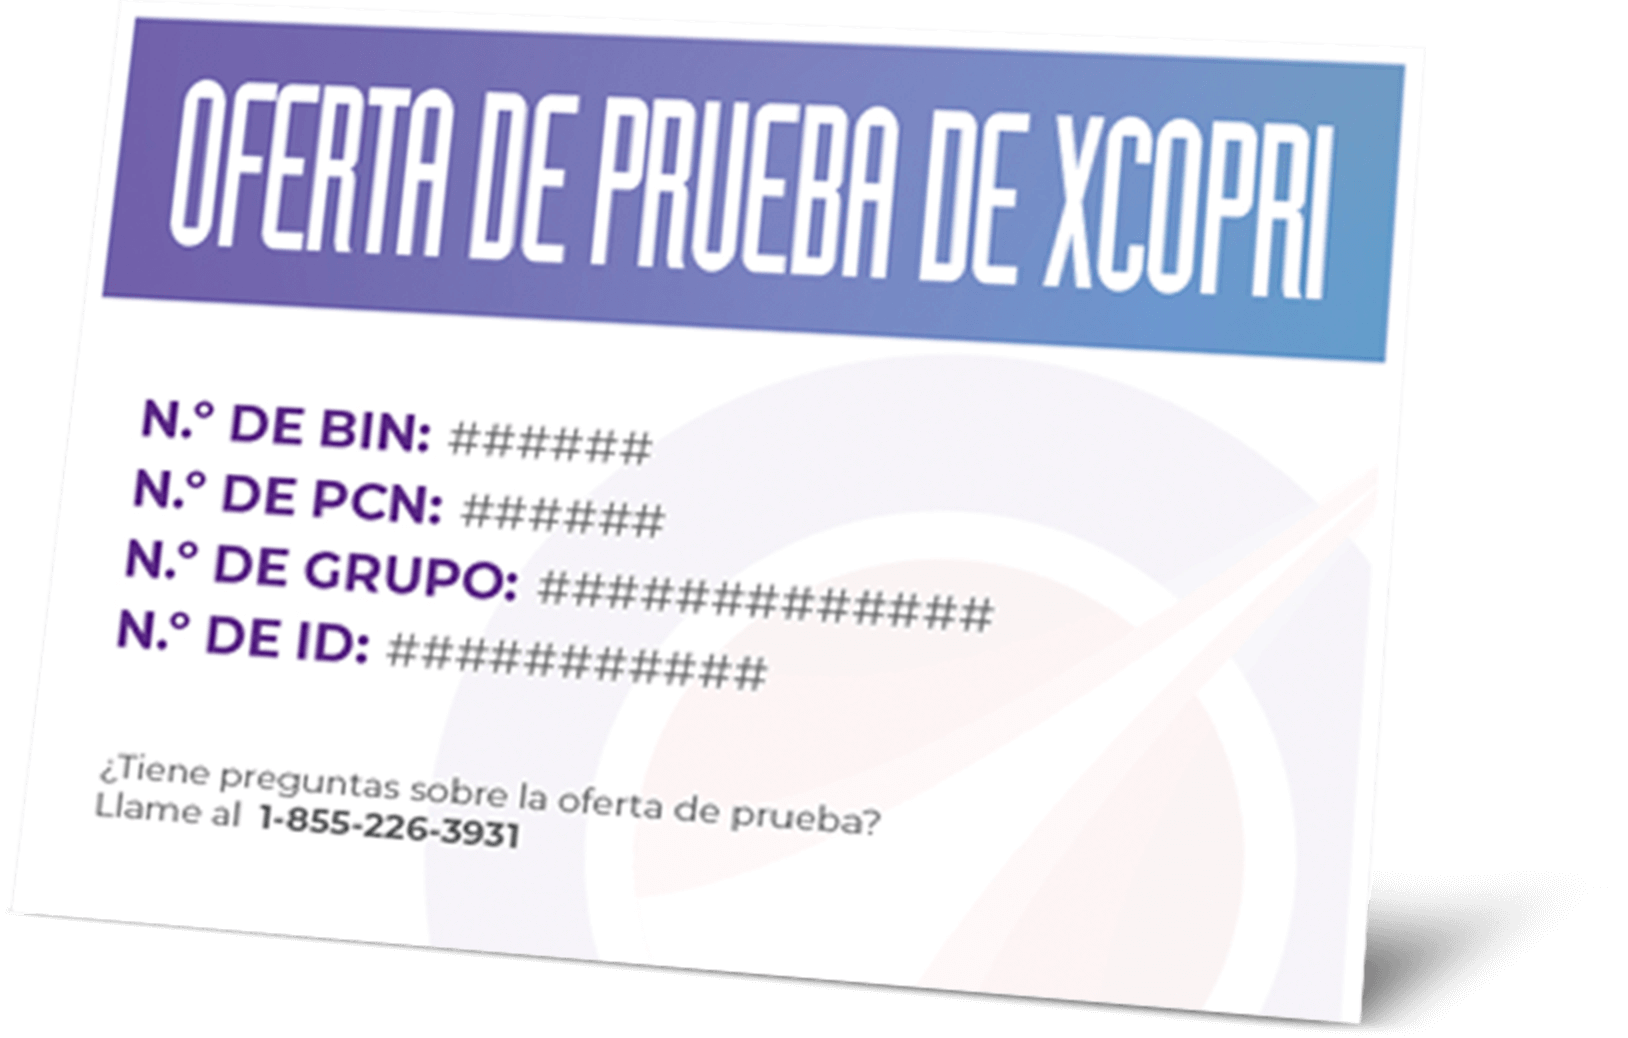 XCOPRI (cenobamate tablets) CV Trial Offer Card